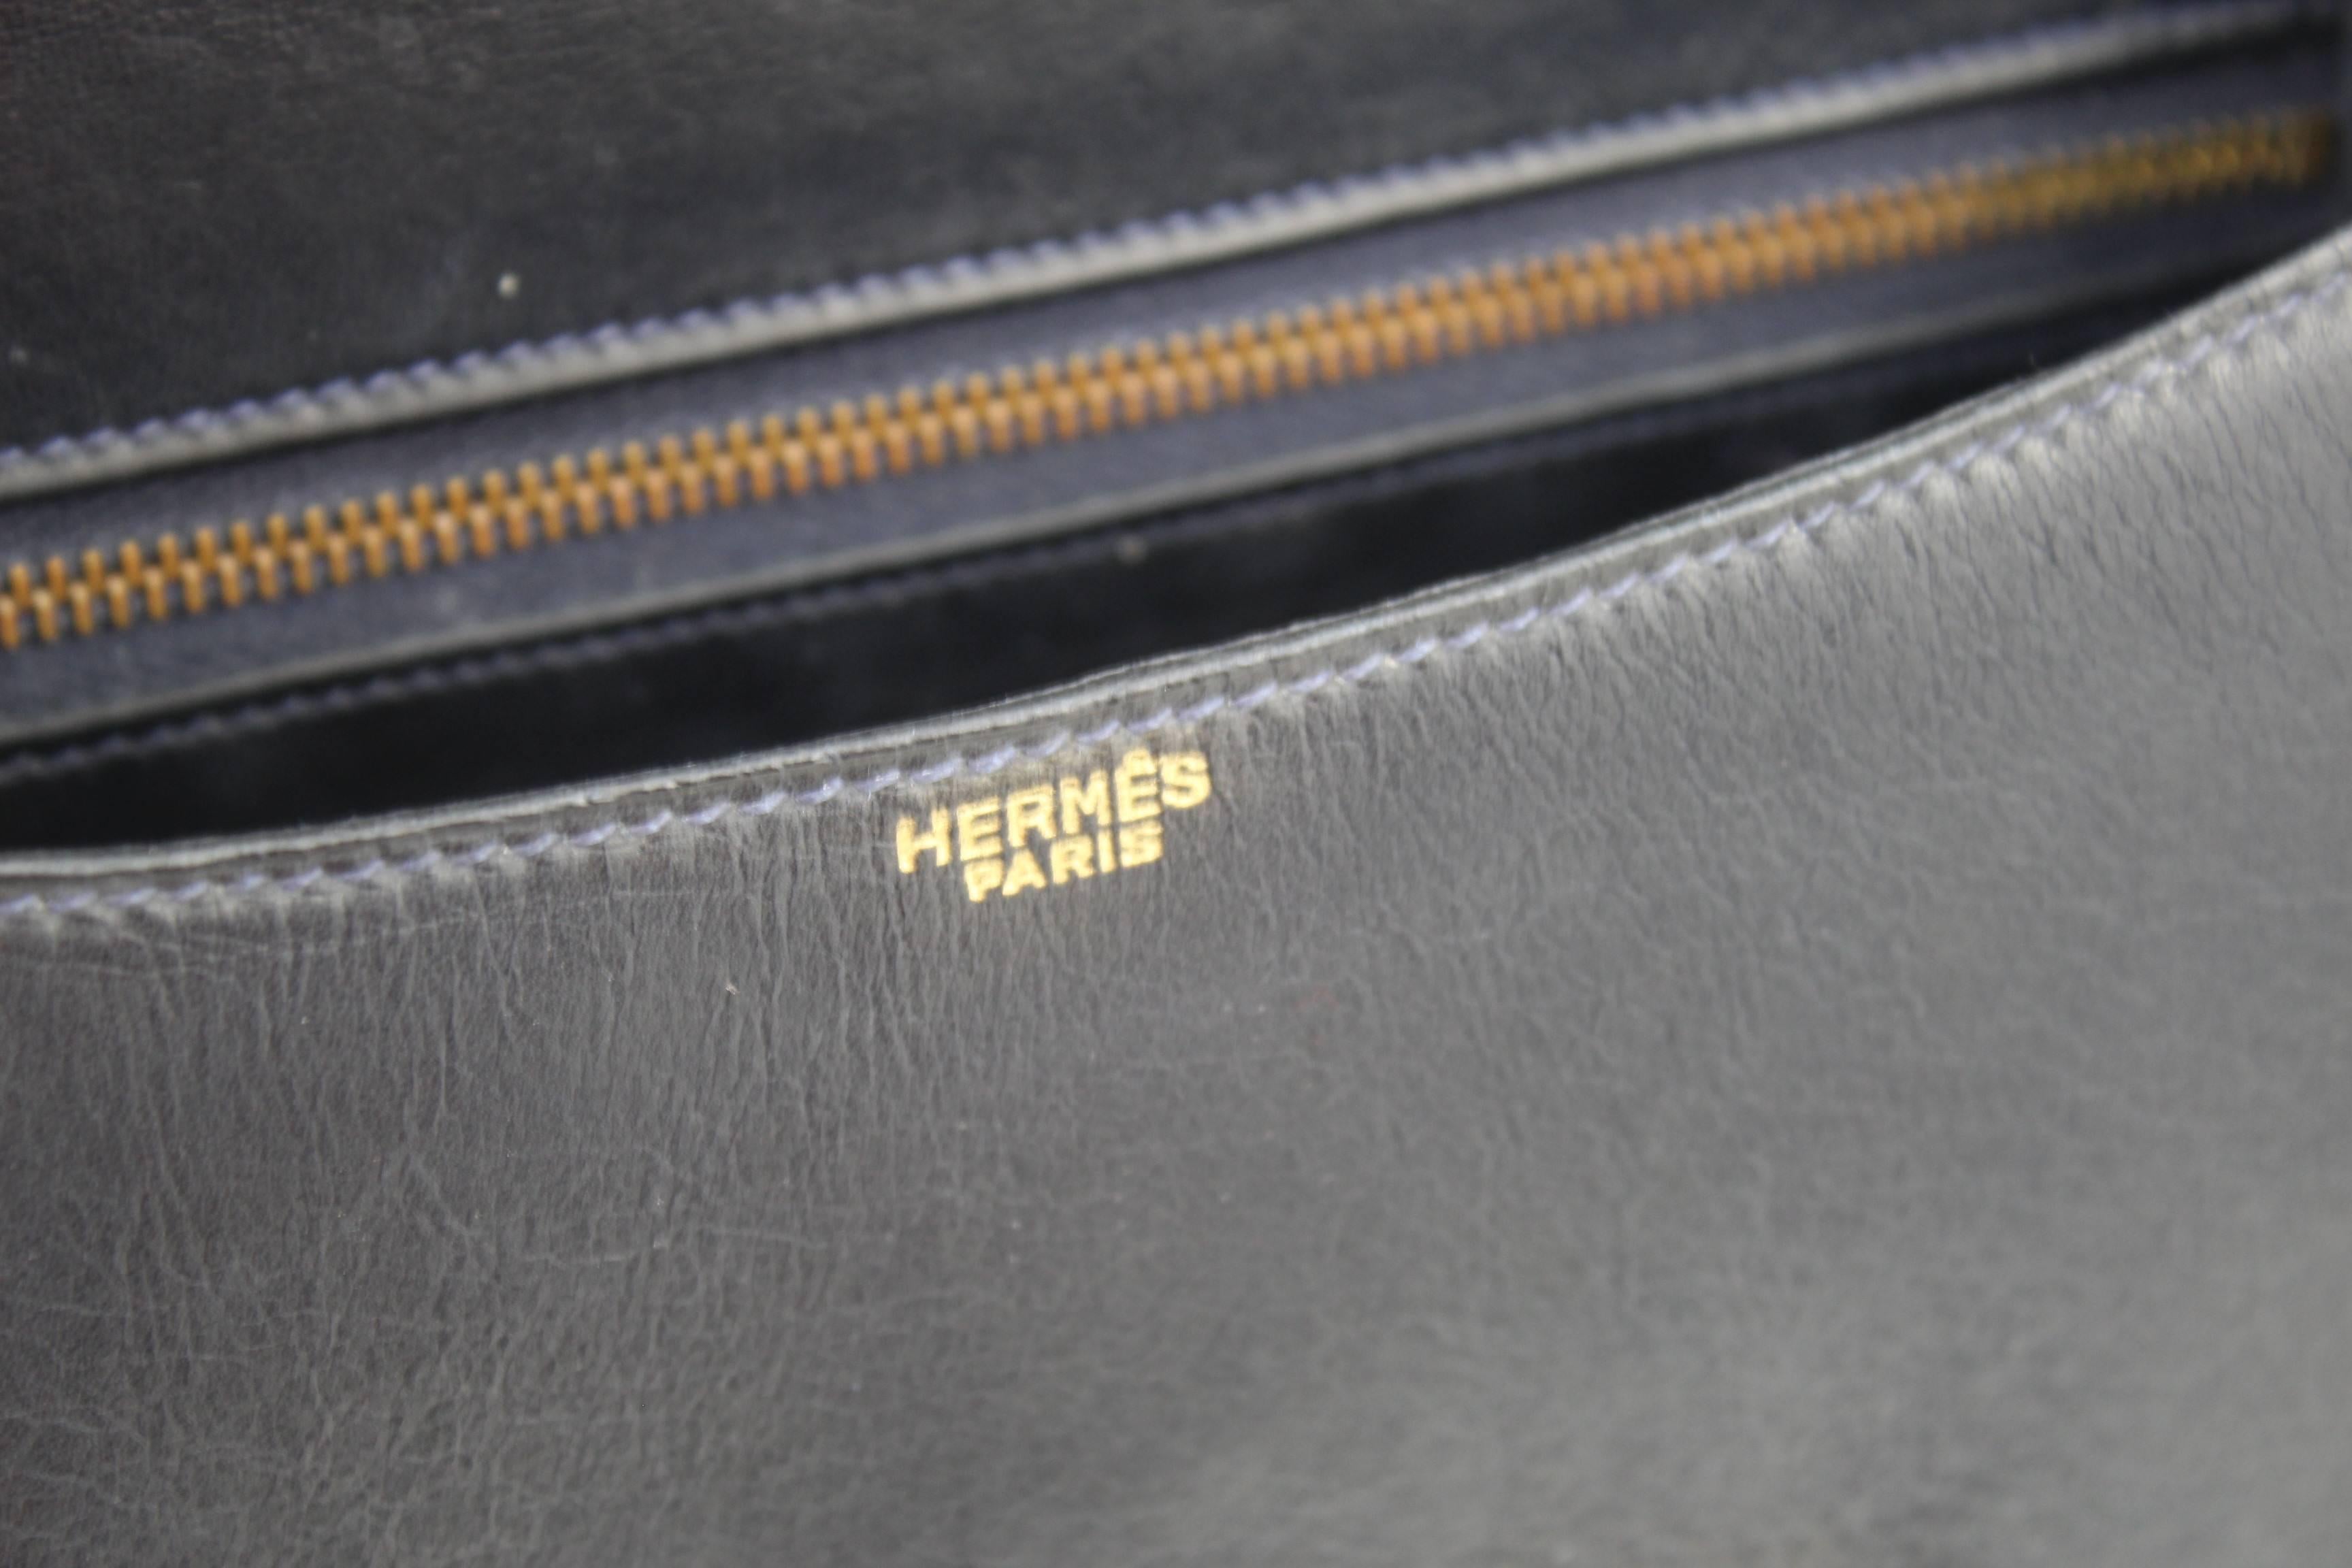 Black Vintage Hermes Constance Navy Bag in Navy leather and Golden Hardware